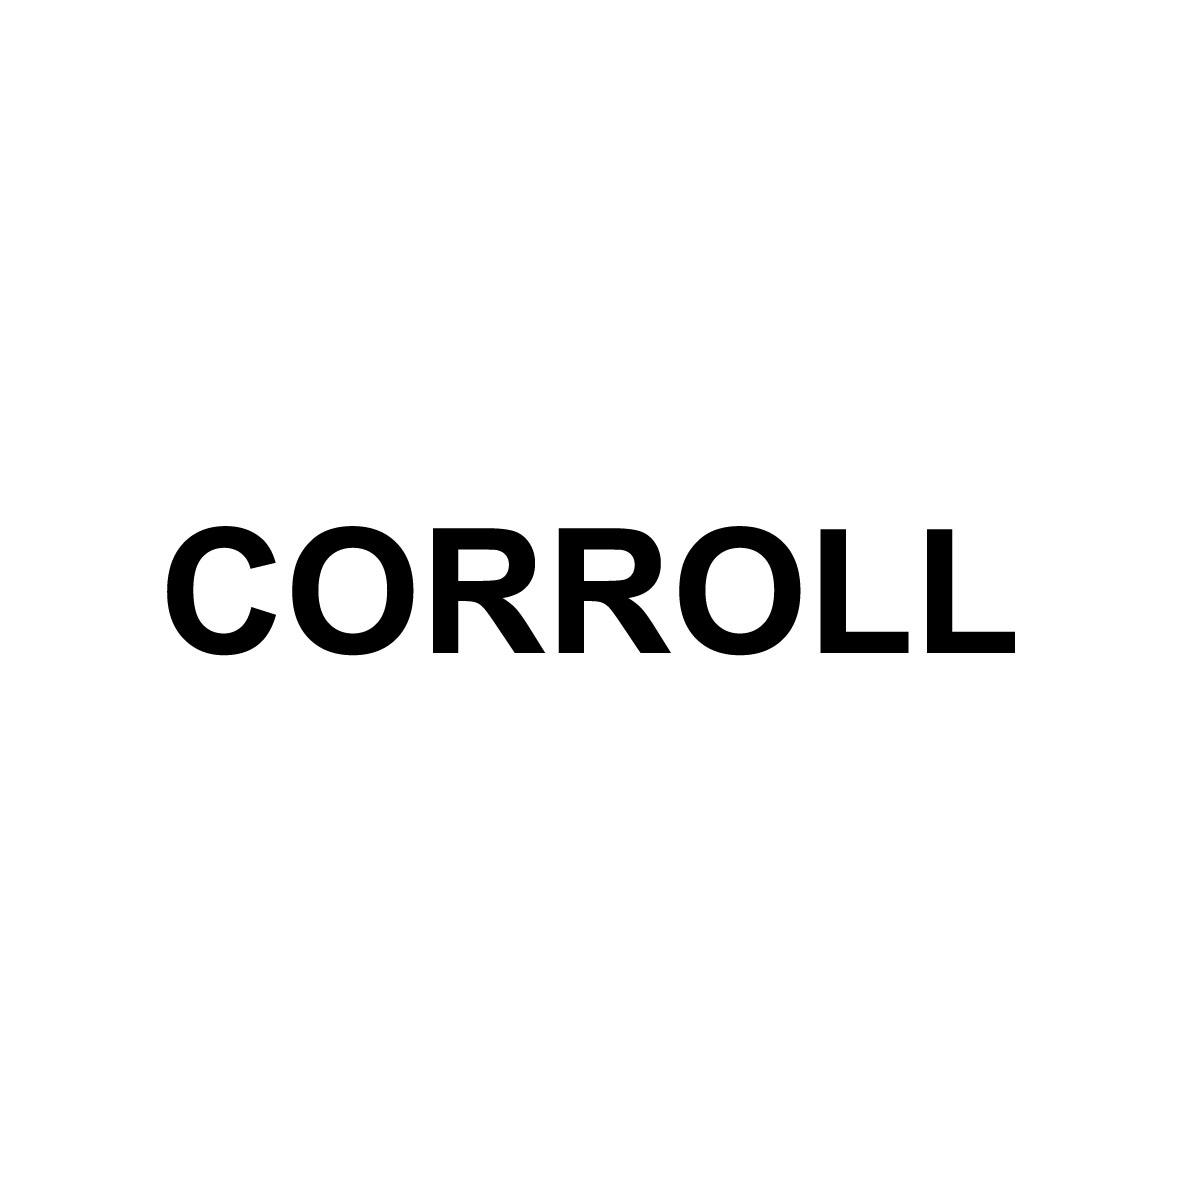 CORROLL